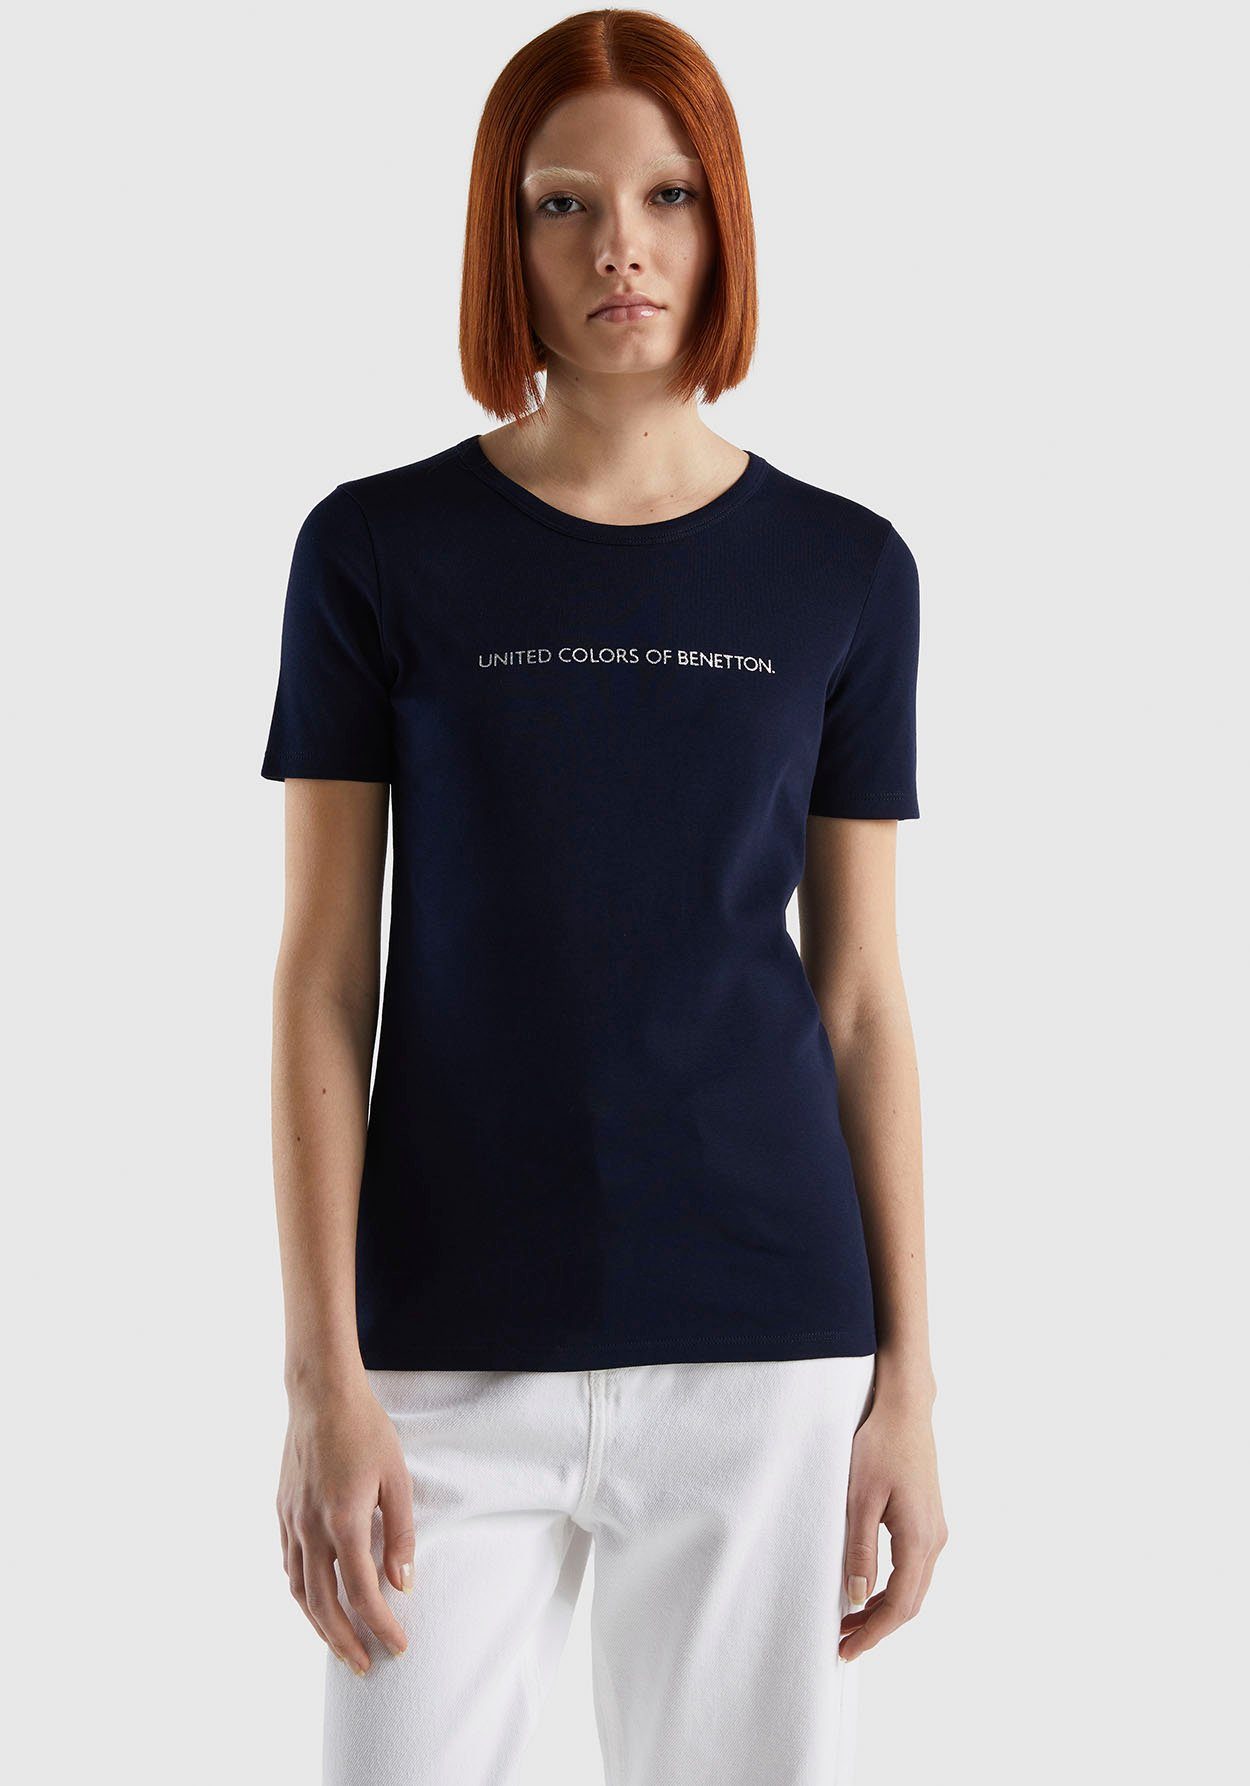 In tegenspraak Panter Schaap United Colors of Benetton Shirts online kopen | Bekijk de collectie | OTTO